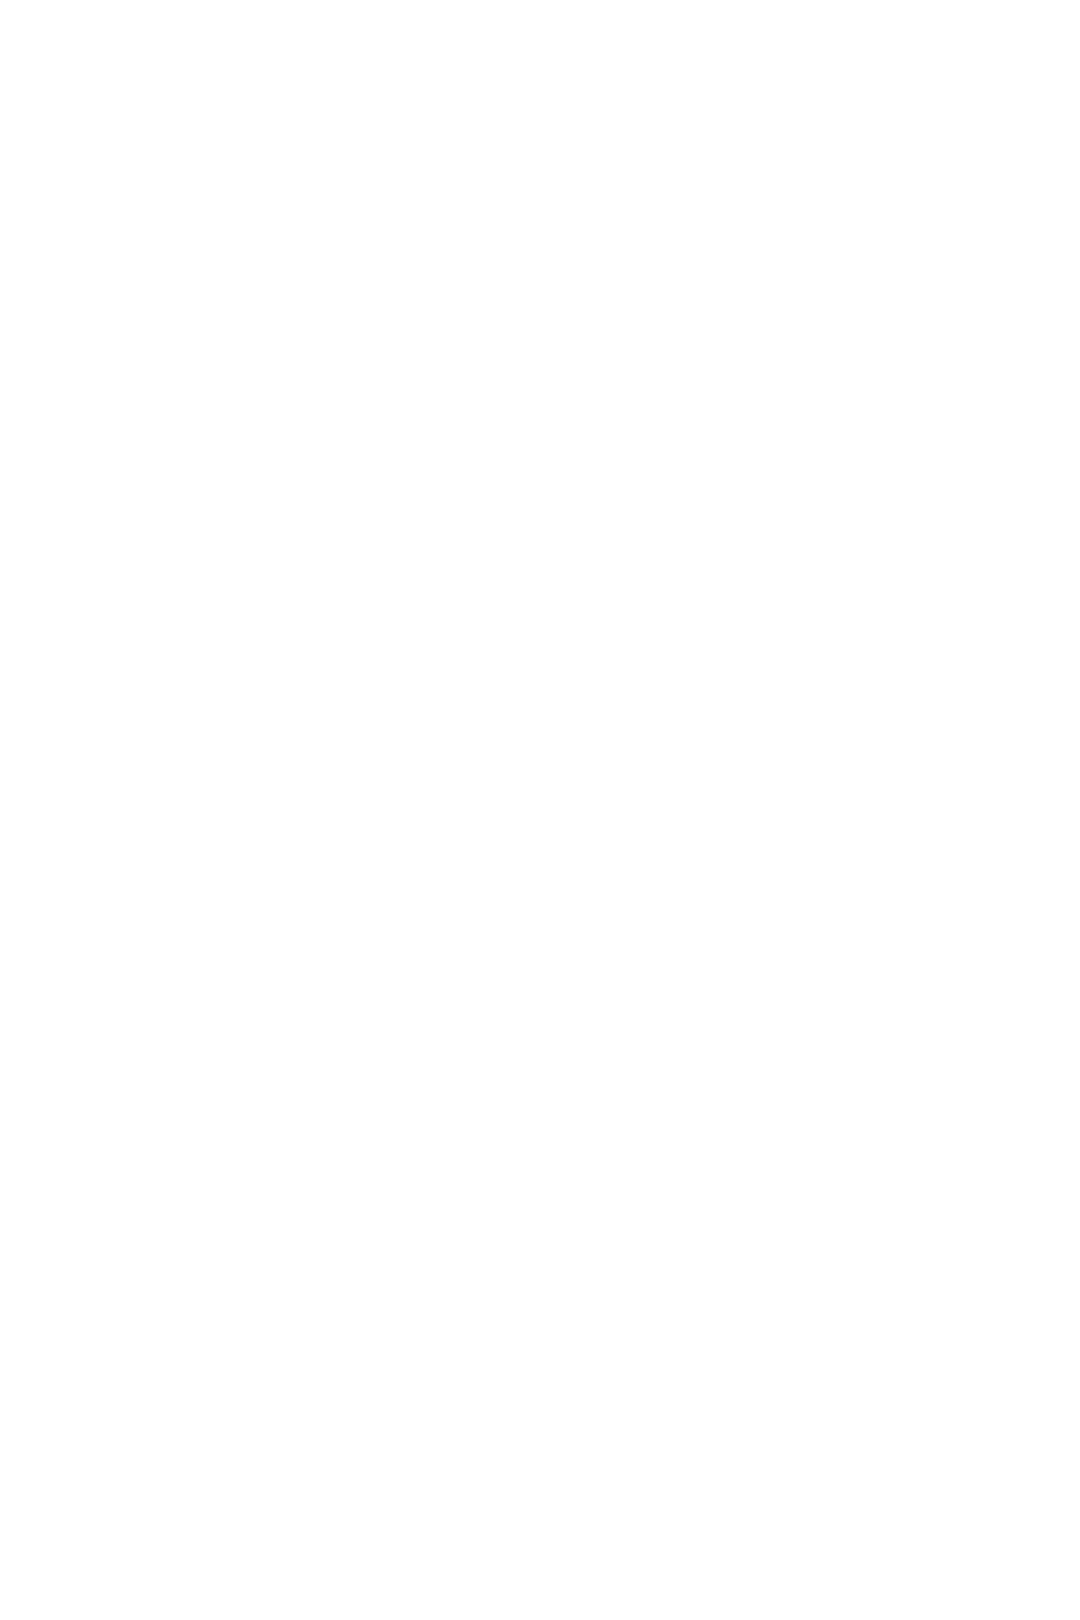 женщина в трикотажном платье с луком и стрелами и кирпично-красной драппировкой на фоне сосны, вид снизу. фотосессия на природе, портрет, фотопрогулка, фотограф Георгий Безбородов